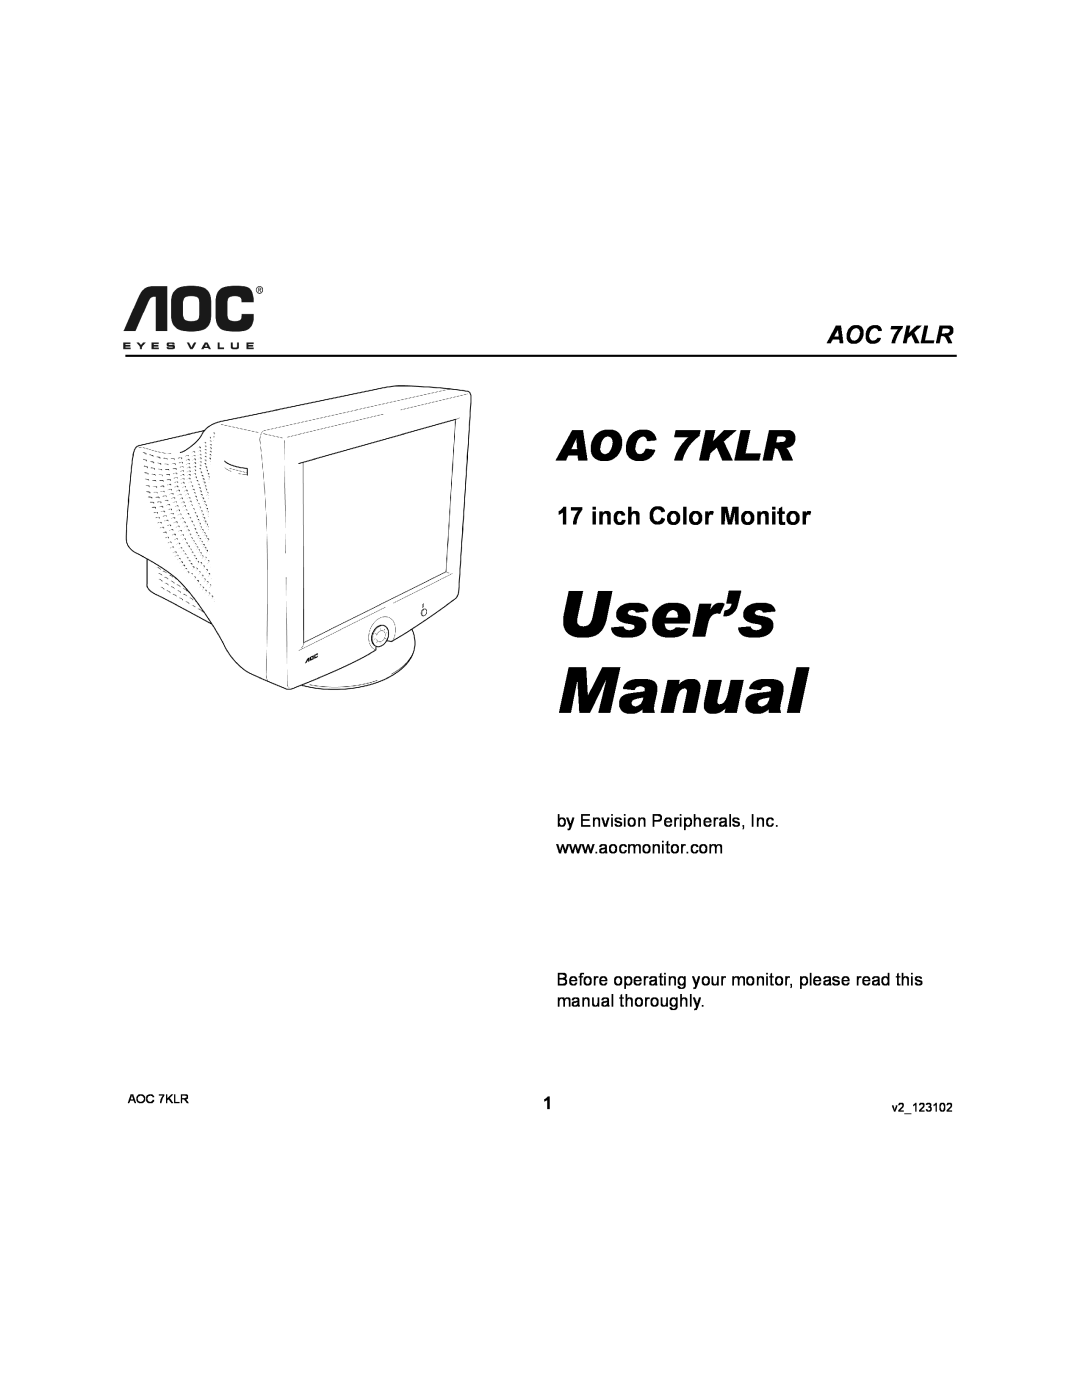 AOC user manual inch Color Monitor, User’s Manual, AOC 7KLR, v2123102 